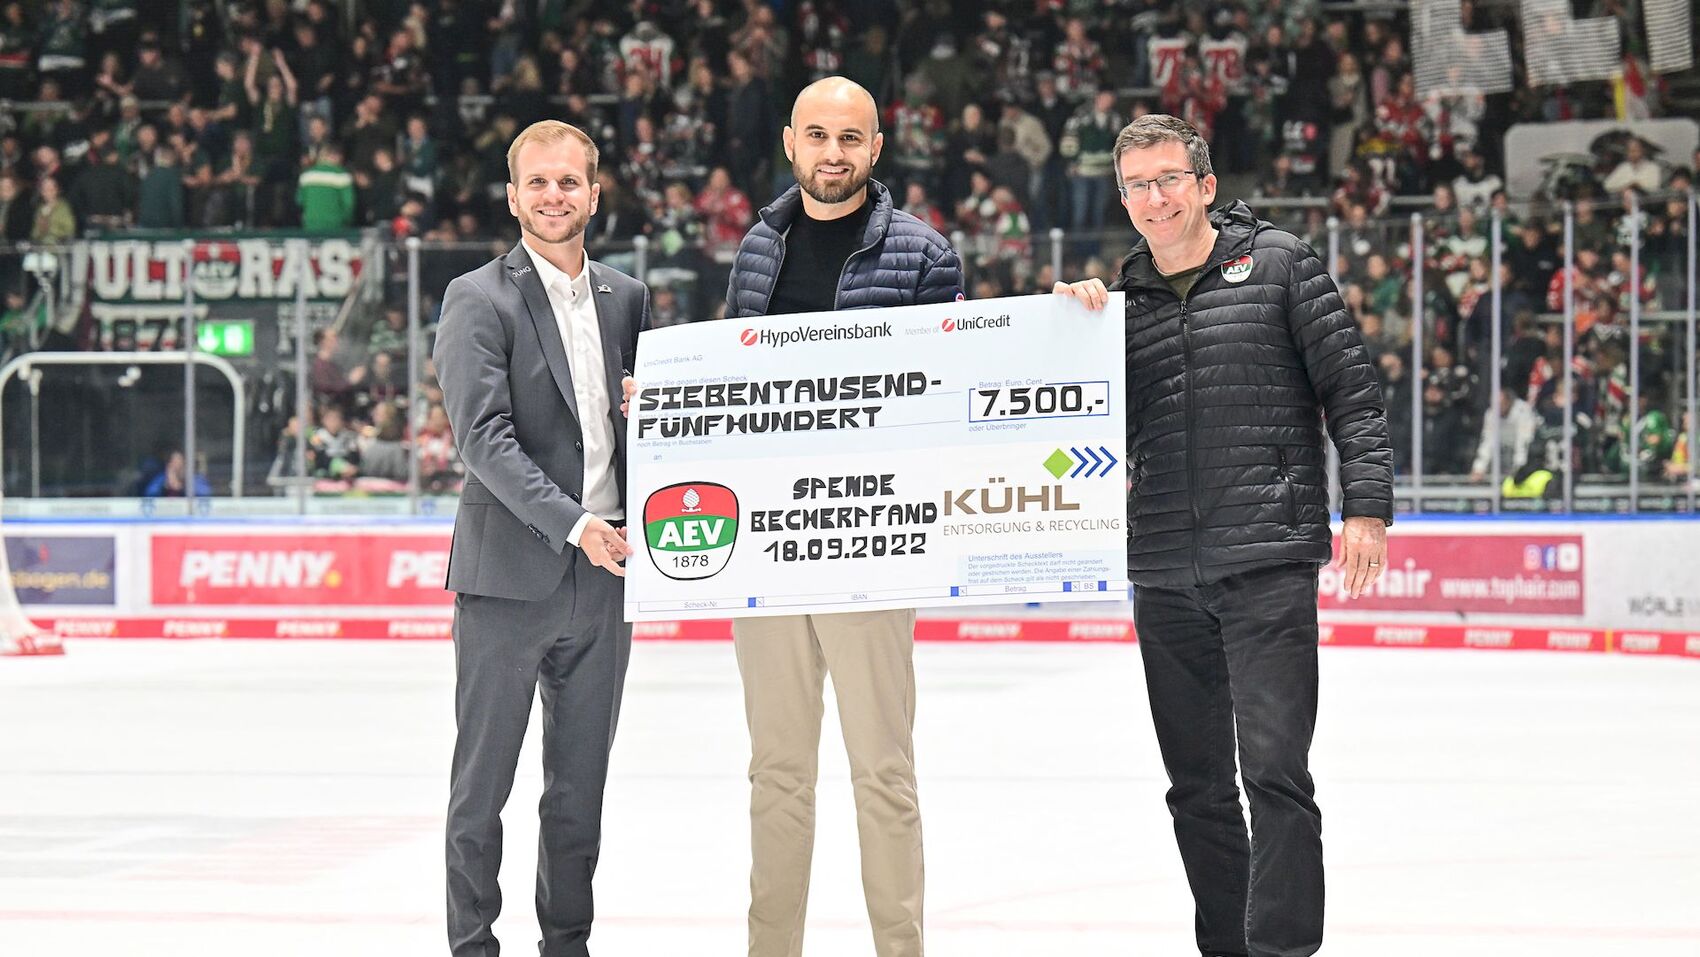 Kühl Entsorgung & Recycling unterstützt Augsburger Eishockey